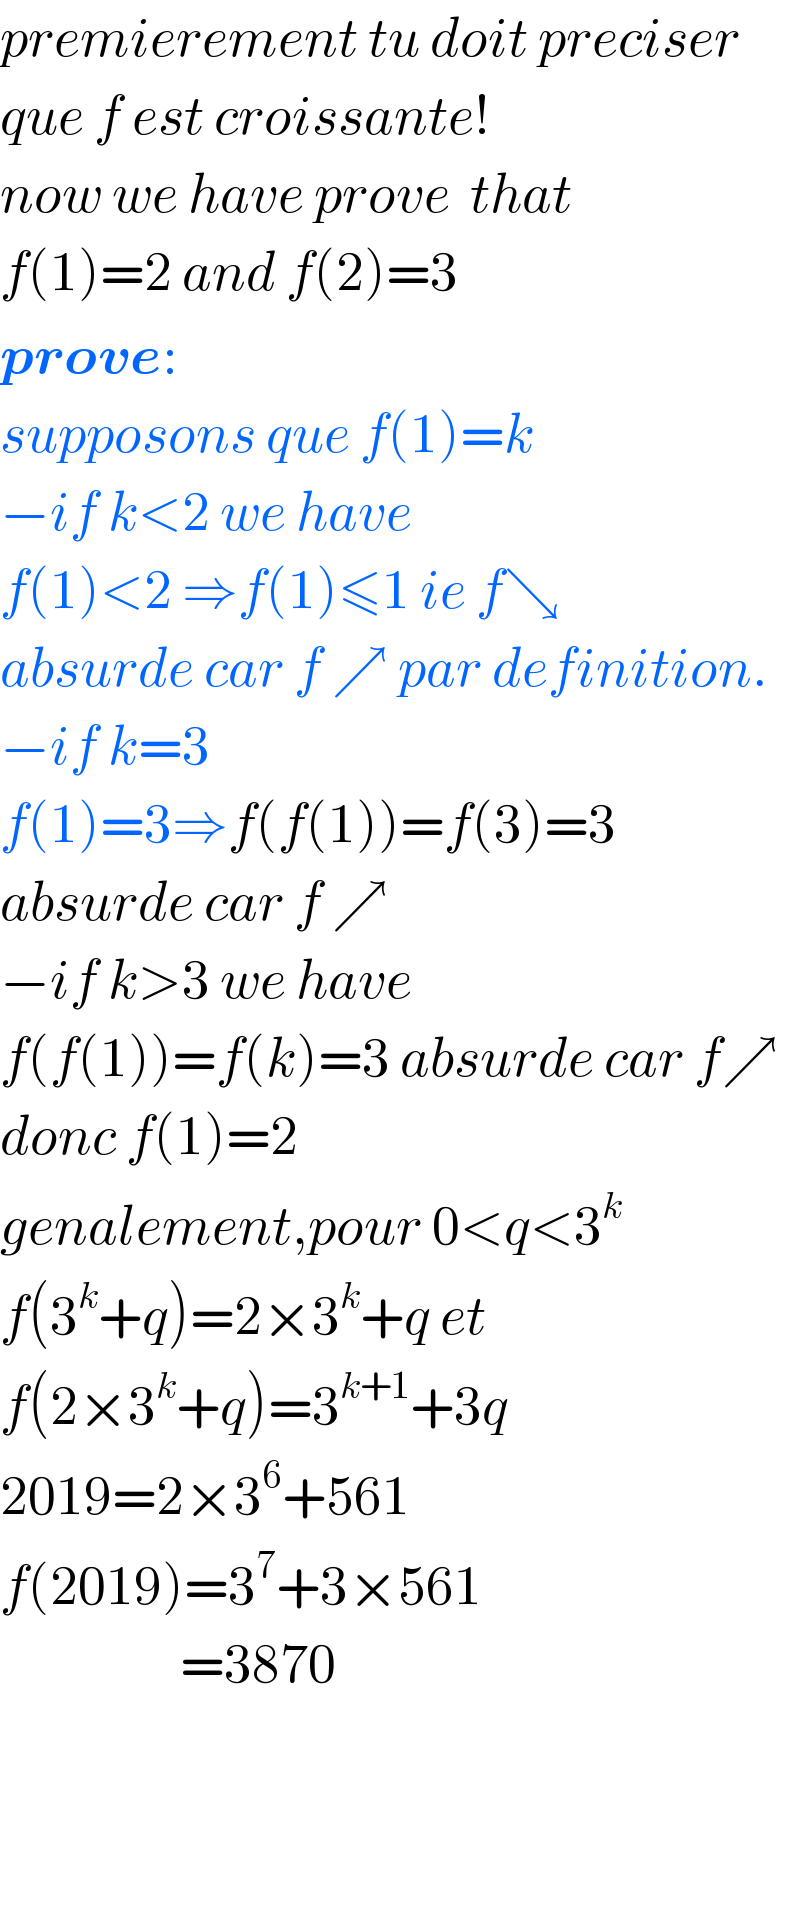 premierement tu doit preciser  que f est croissante!  now we have prove  that  f(1)=2 and f(2)=3  prove:  supposons que f(1)=k  −if k<2 we have   f(1)<2 ⇒f(1)≤1 ie f↘  absurde car f ↗ par definition.  −if k=3  f(1)=3⇒f(f(1))=f(3)=3  absurde car f ↗  −if k>3 we have  f(f(1))=f(k)=3 absurde car f↗  donc f(1)=2  genalement,pour 0<q<3^k   f(3^k +q)=2×3^k +q et  f(2×3^k +q)=3^(k+1) +3q  2019=2×3^6 +561  f(2019)=3^7 +3×561                    =3870      